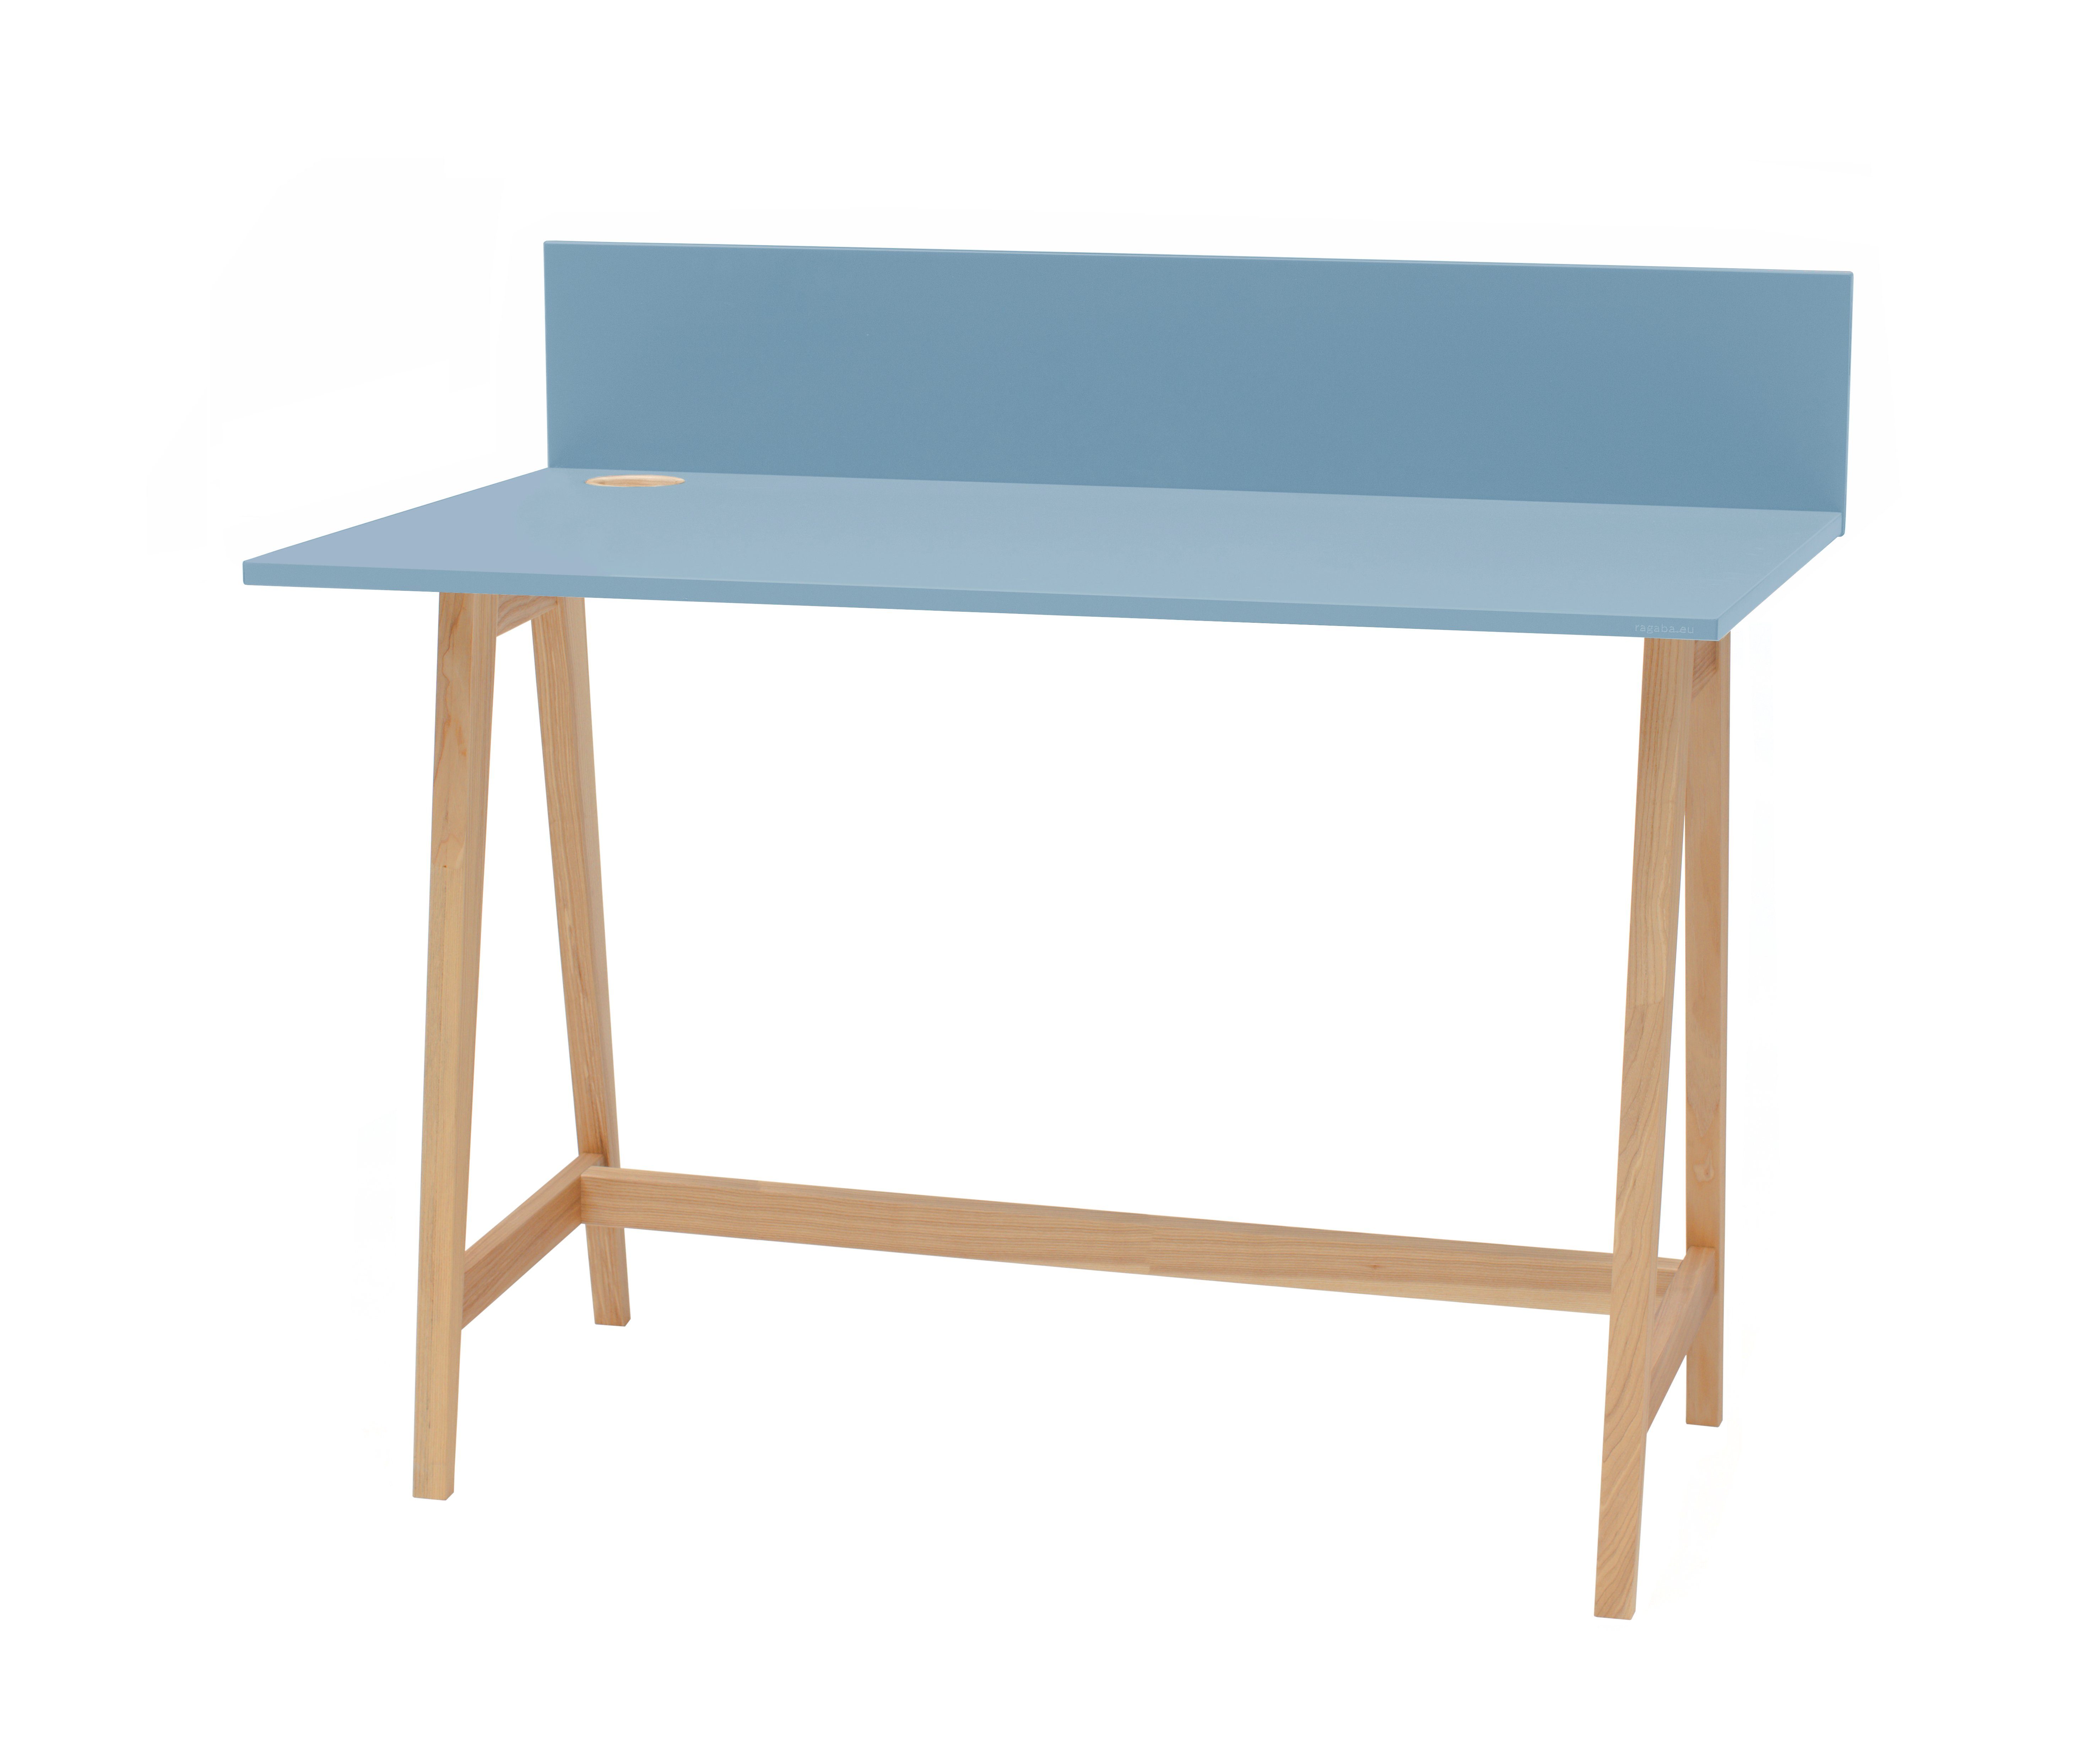 Siblo Schreibtisch Kinderschreibtisch Tony - Bunter Schreibtisch - ohne Schublade - Kinderzimmer - MDF-Platte - Eschenholz (Kinderschreibtisch Tony ohne Schublade) Hellblau